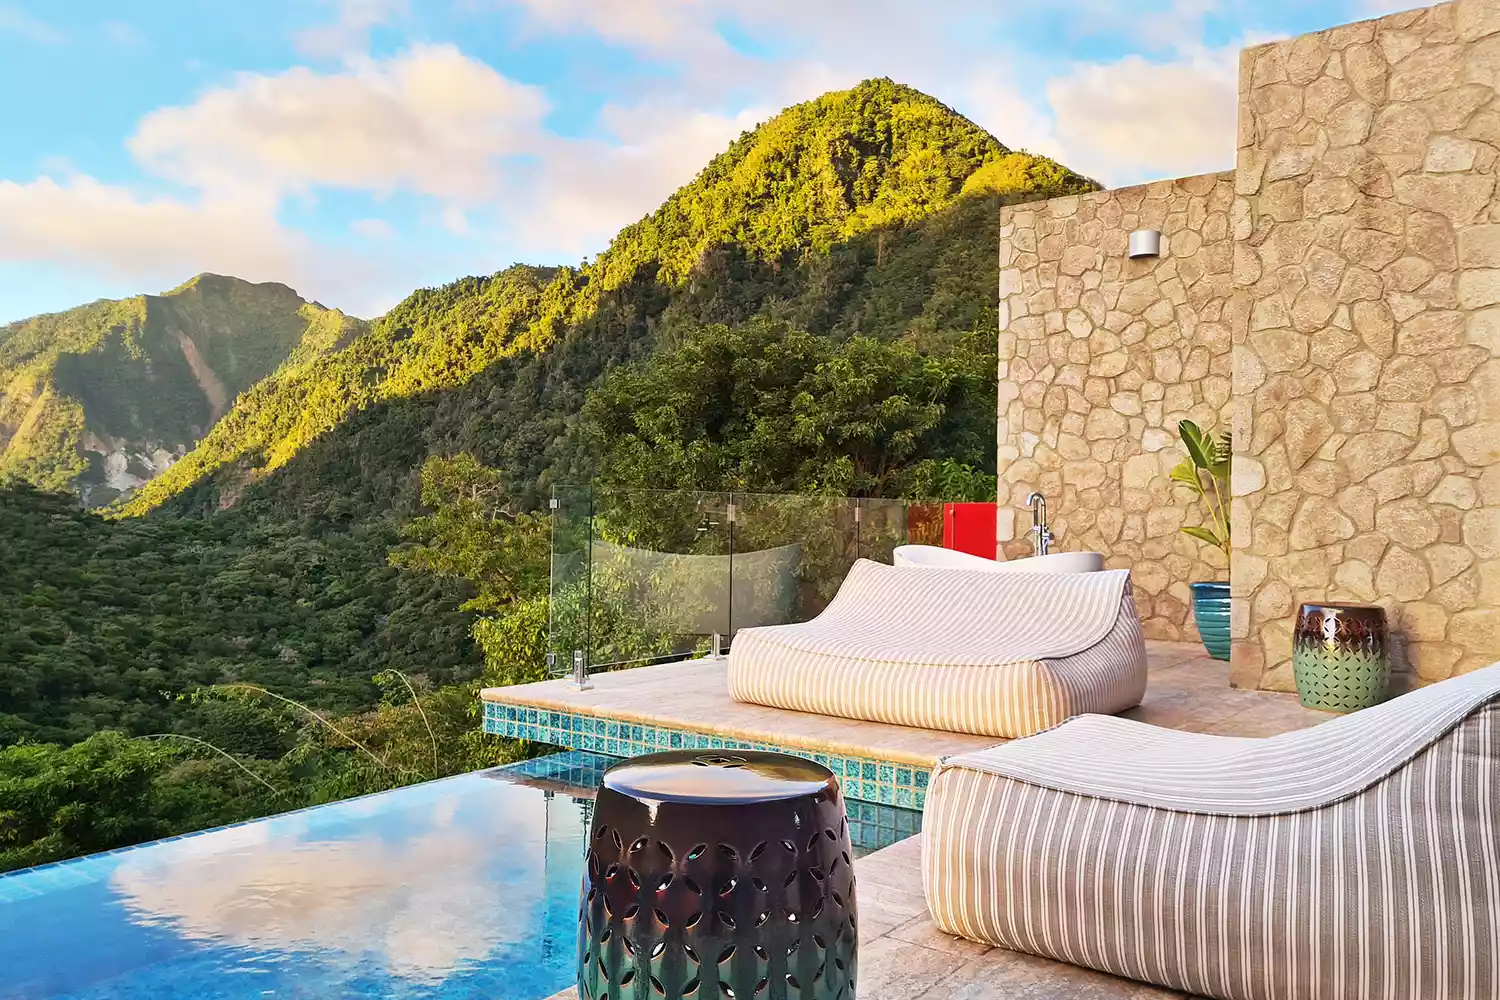 Bể ngâmaCoulibri Ridge là khu nghỉ dưỡng sang trọng mới nhất ở Dominica và tầm nhìn từ sân thượng spa tại Coulibri Ridge